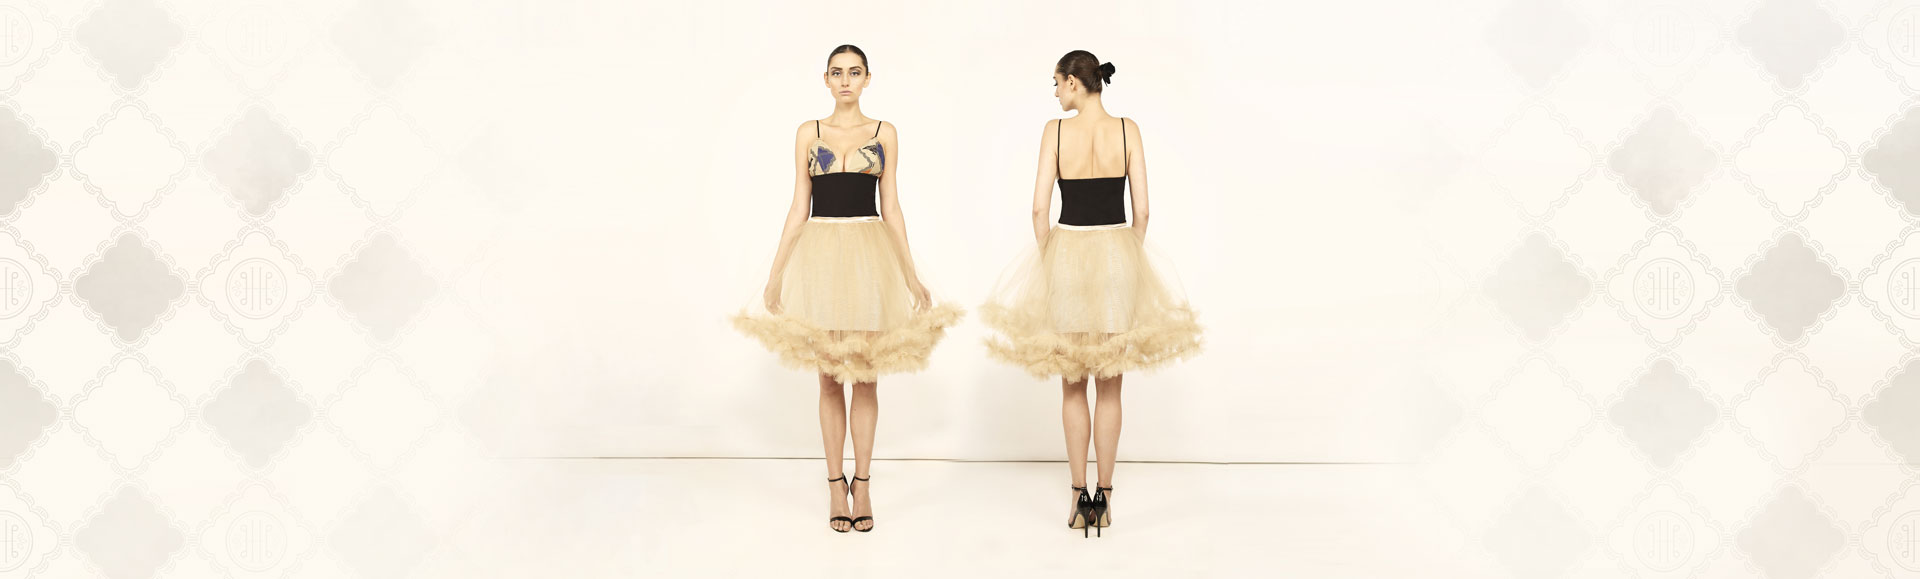 3black-ballerina-dress-1-web.jpg